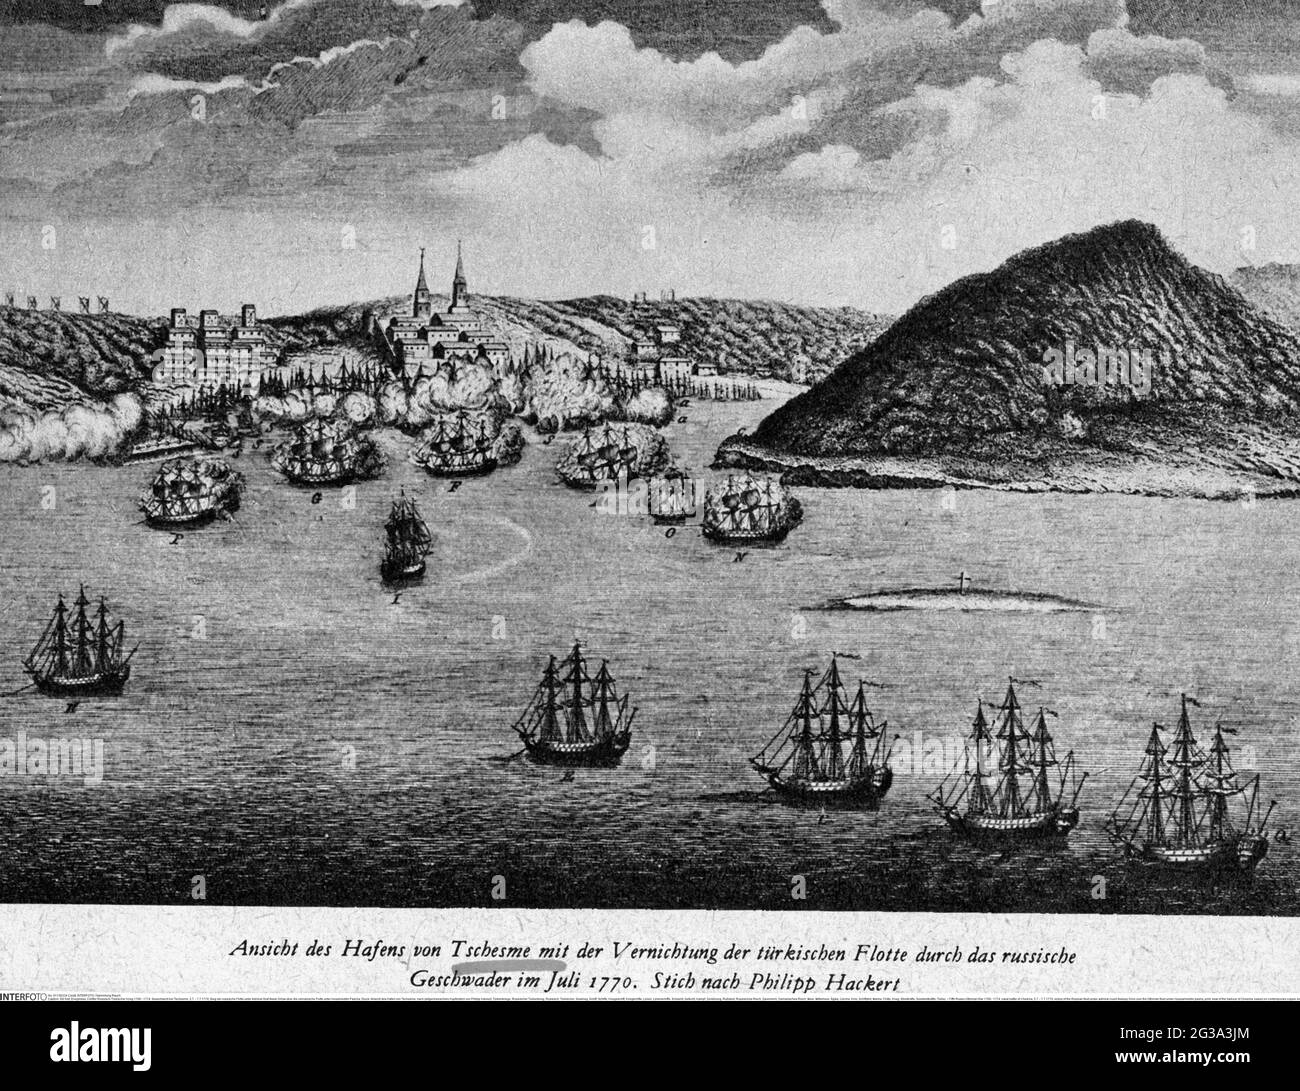 Fünfter russisch-osmanischer Krieg 1768 - 1774, Seeschlacht von der Insel, 5.7. - 7.7.1770, ZUSÄTZLICHE-RIGHTS-CLEARANCE-INFO-NOT-AVAILABLE Stockfoto